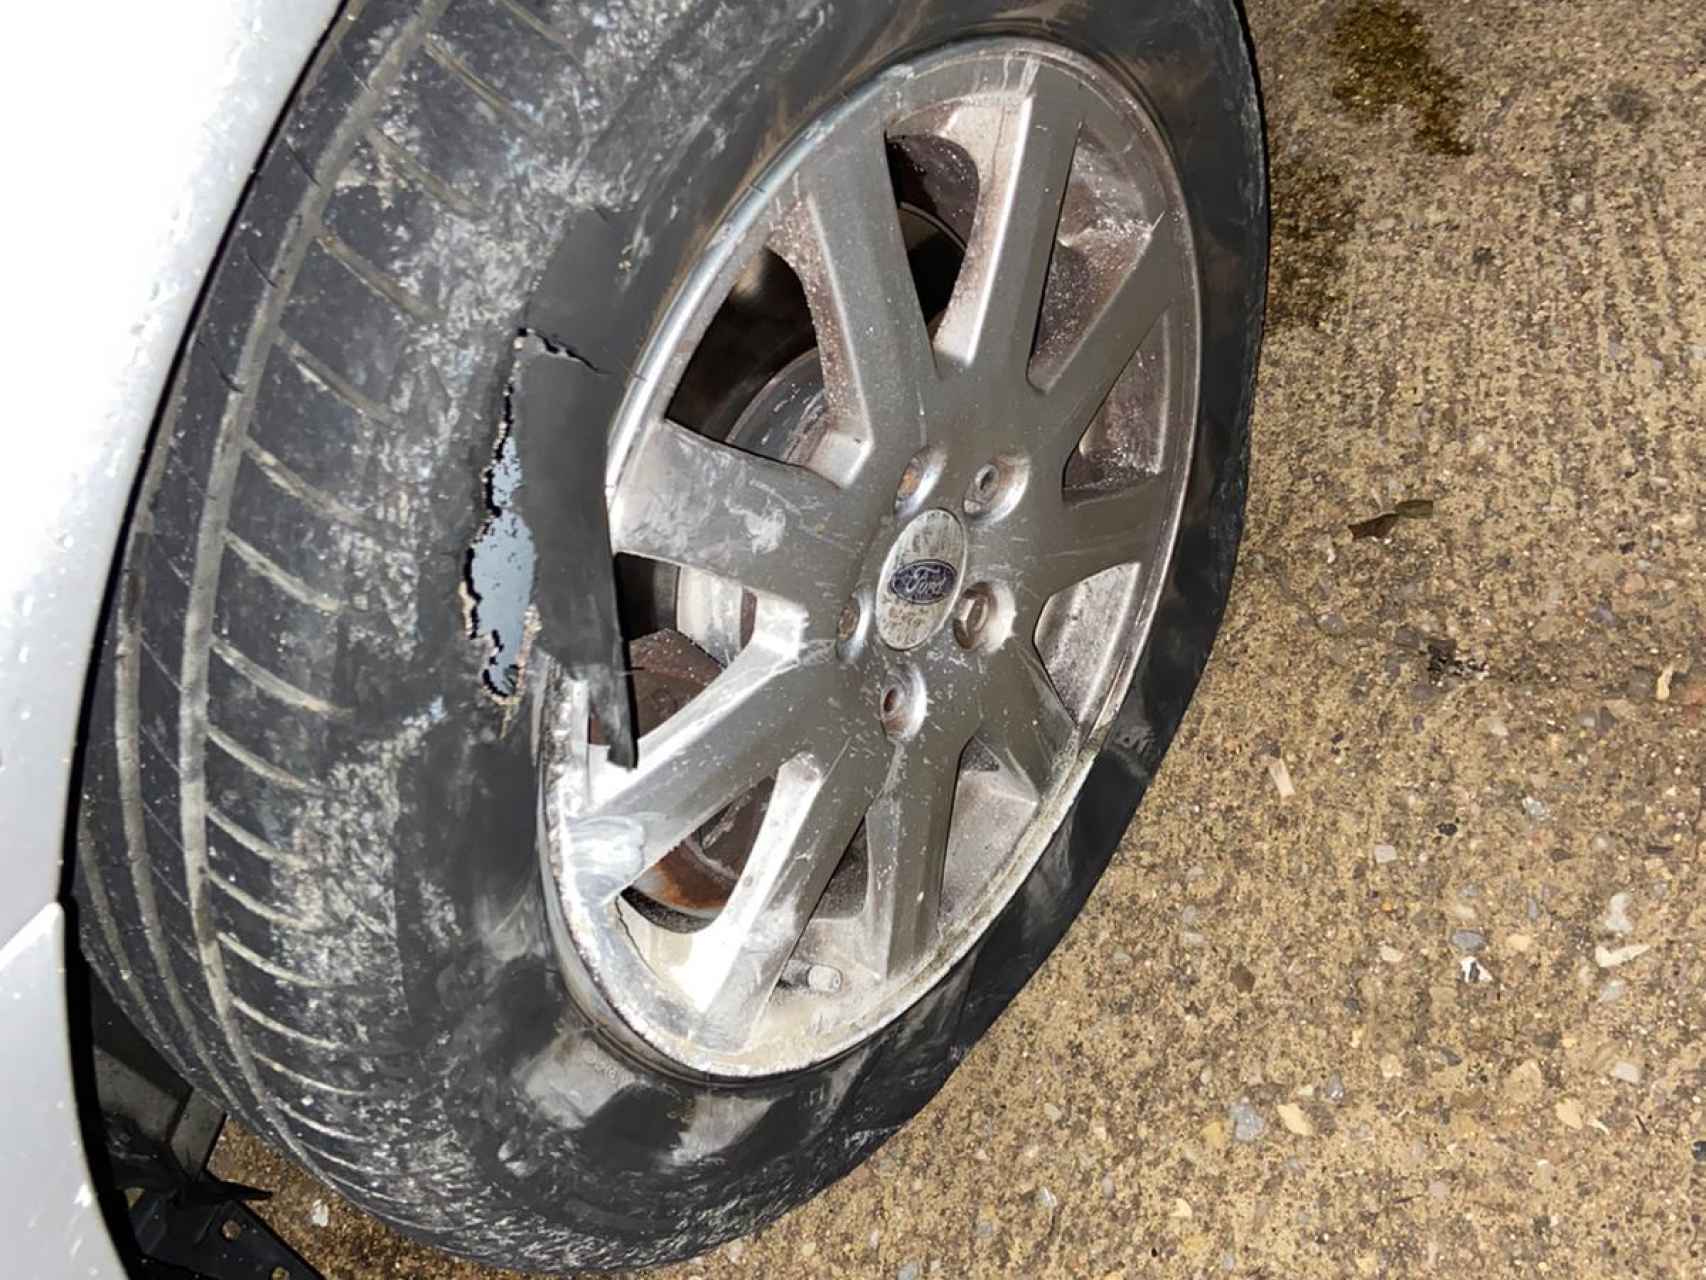 La rueda destrozada del coche